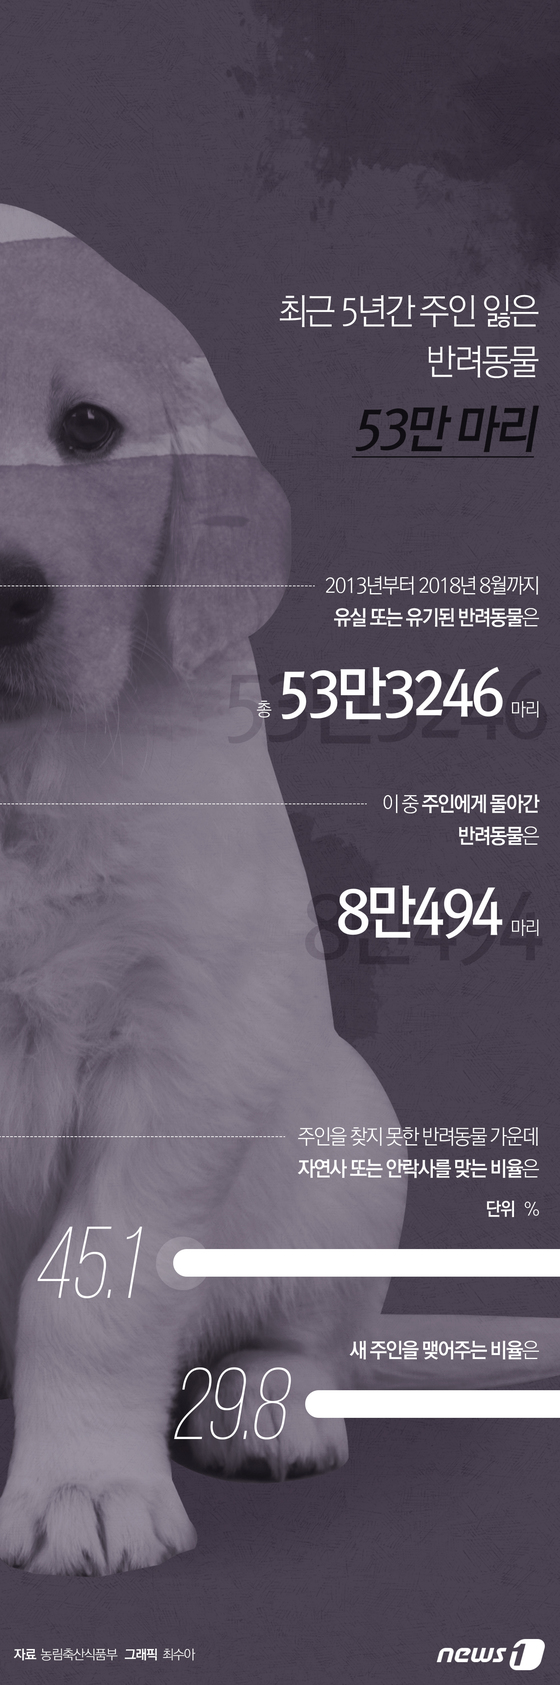 [그래픽뉴스] 최근 5년간 주인 잃은 반려동물 53만 마리